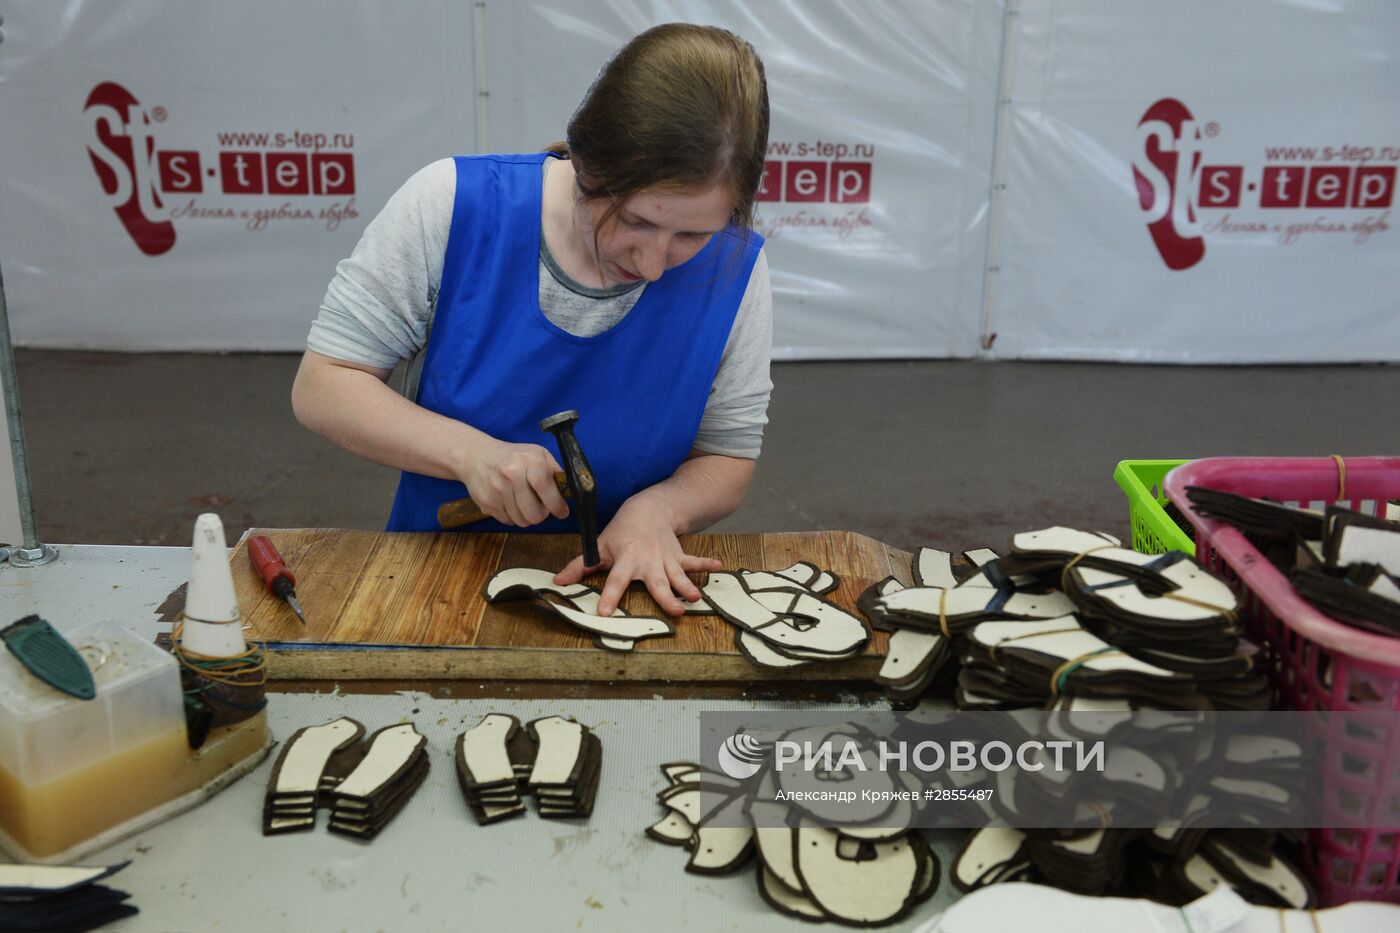 Производство ГК "Обувь России" в Новосибирской области